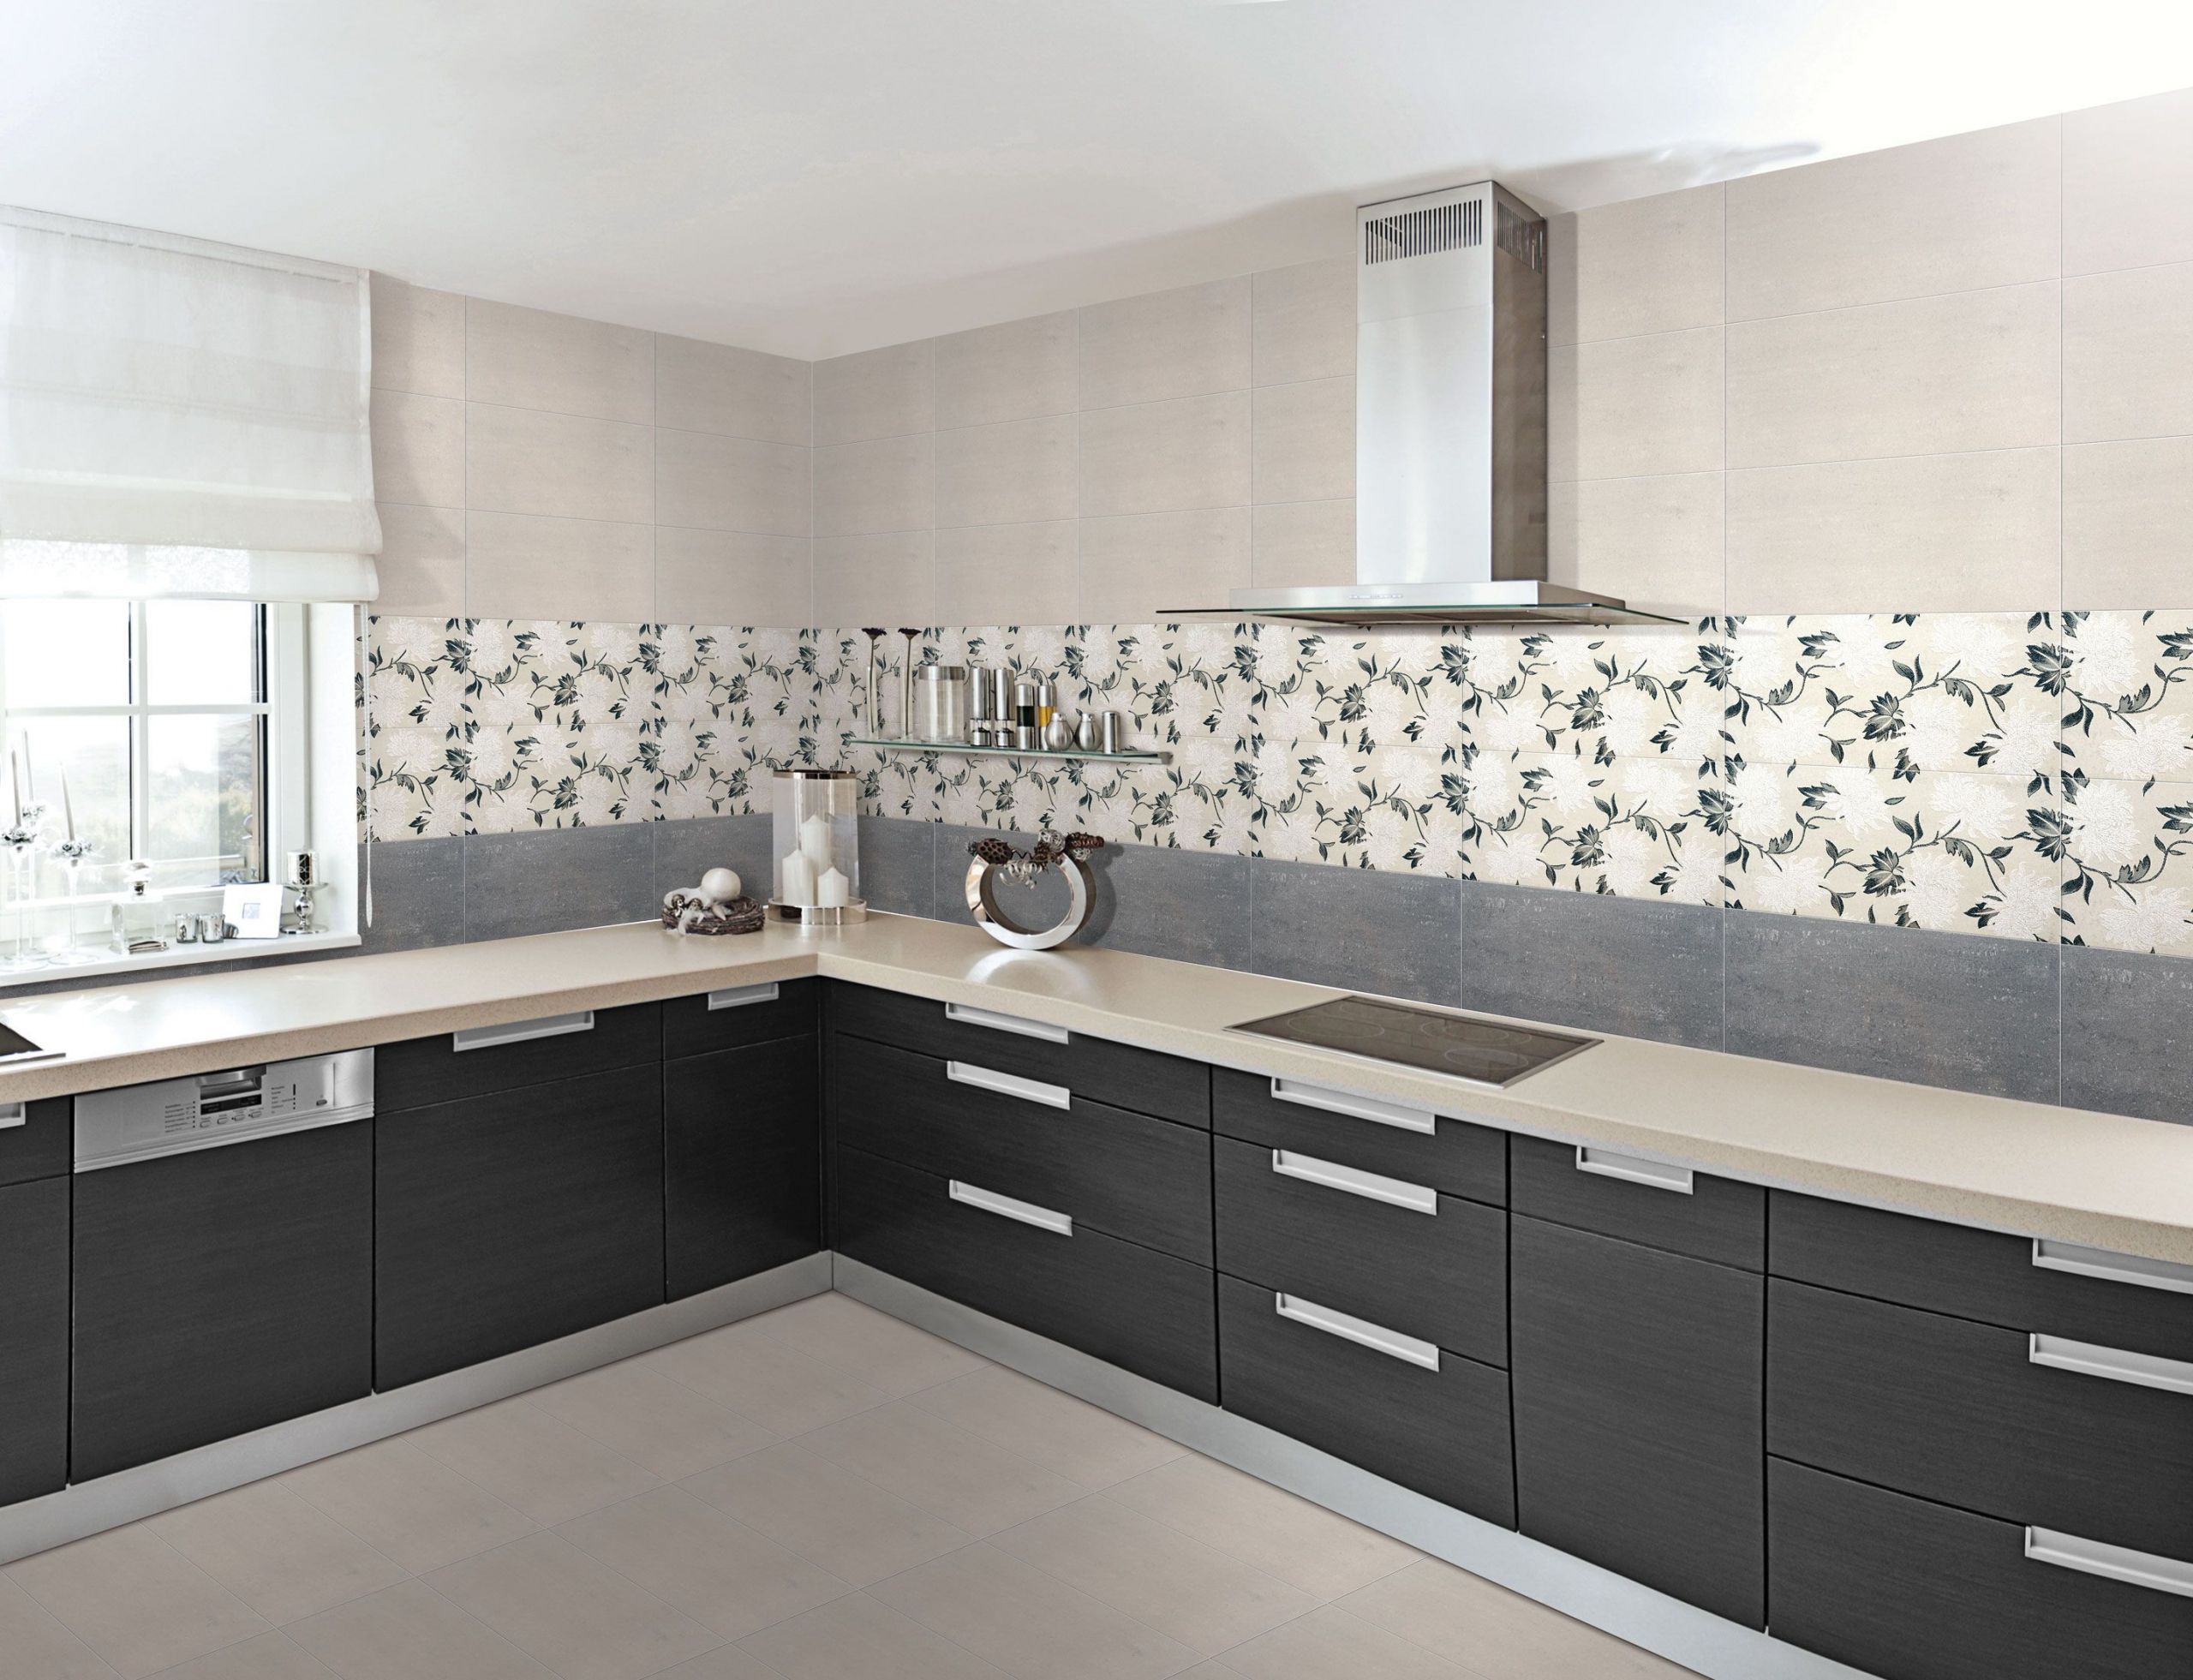 Kitchen Wall Tiles Design
 Buy Designer Floor Wall Tiles for Bathroom Bedroom